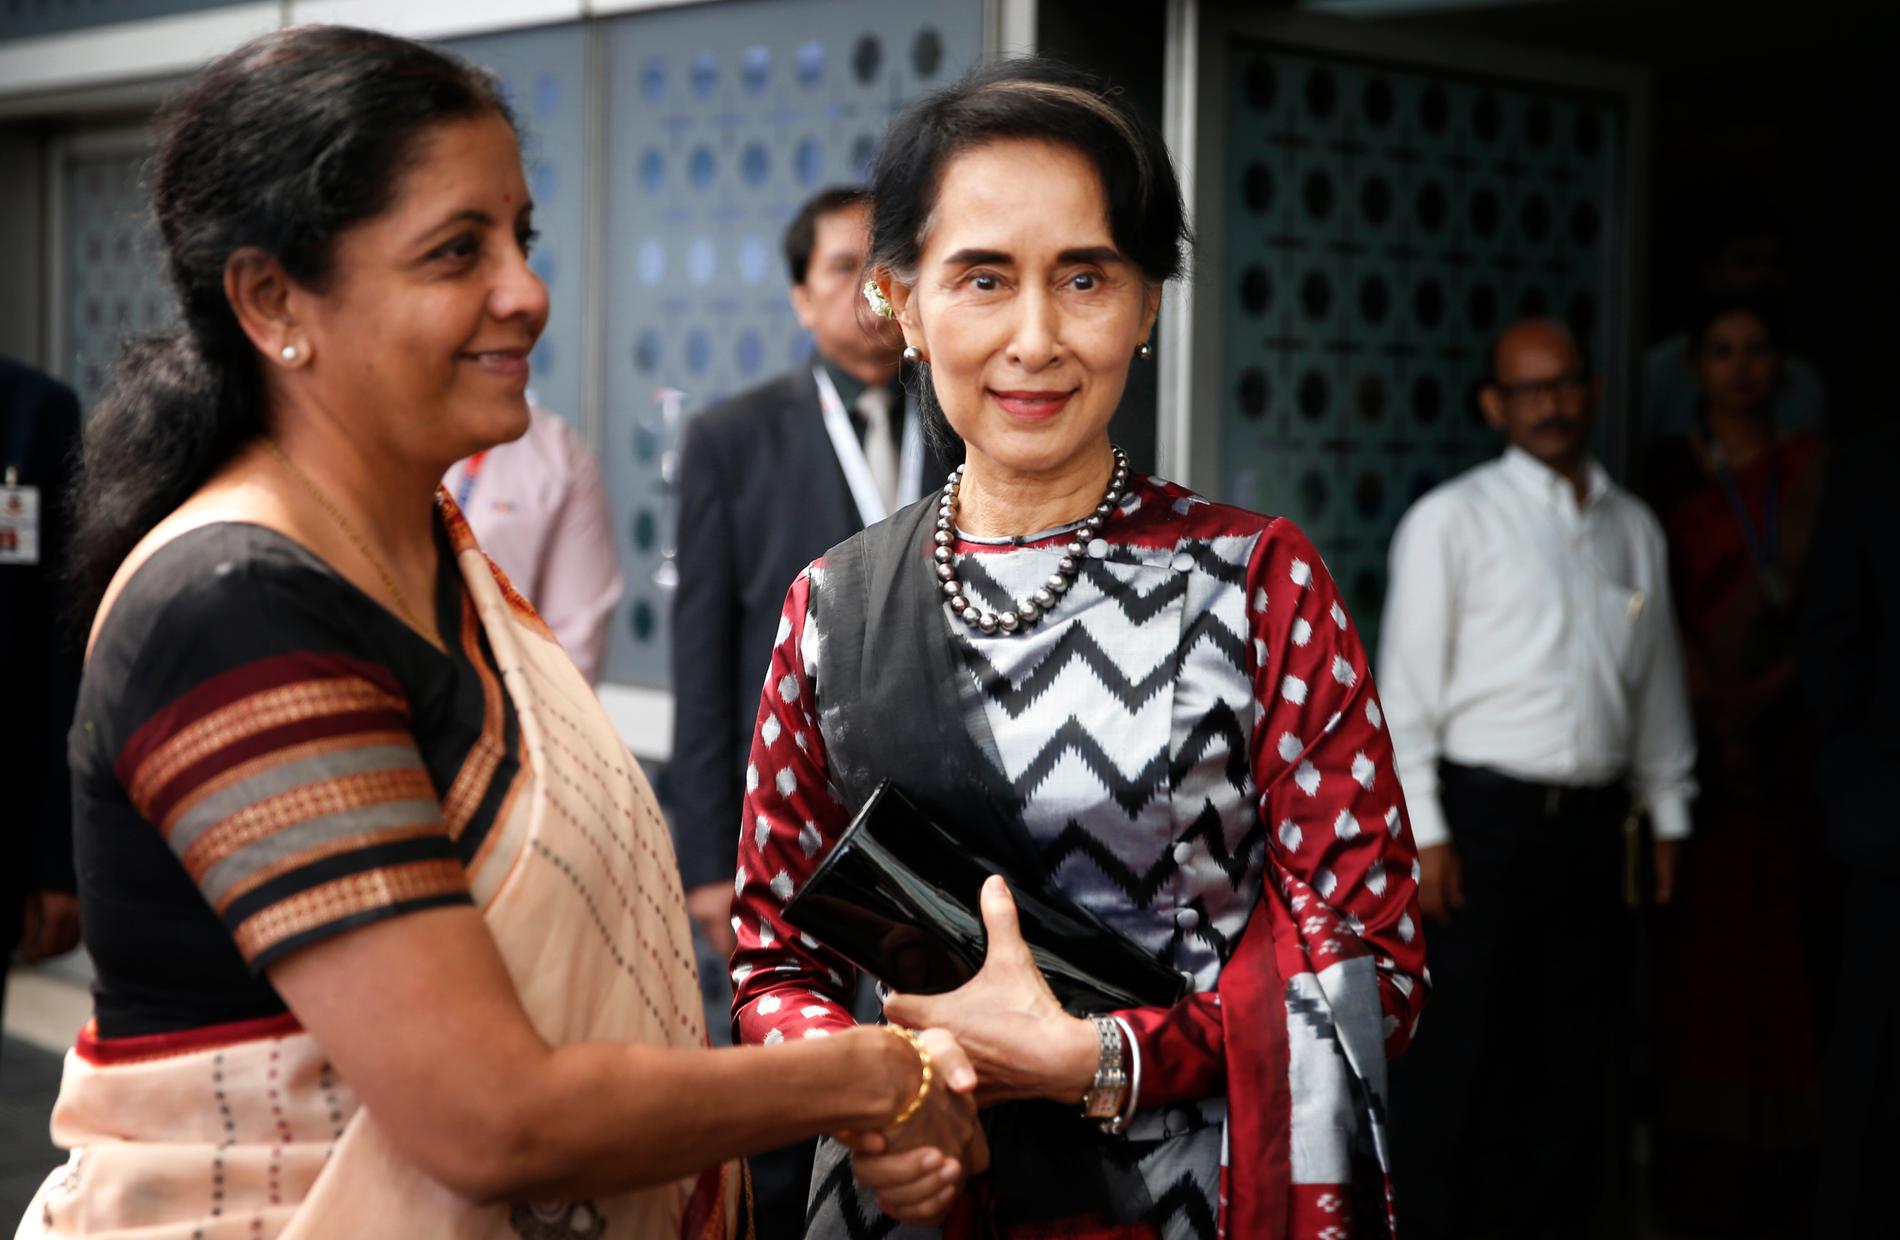 Aung San Suu Kyi till höger i bild.